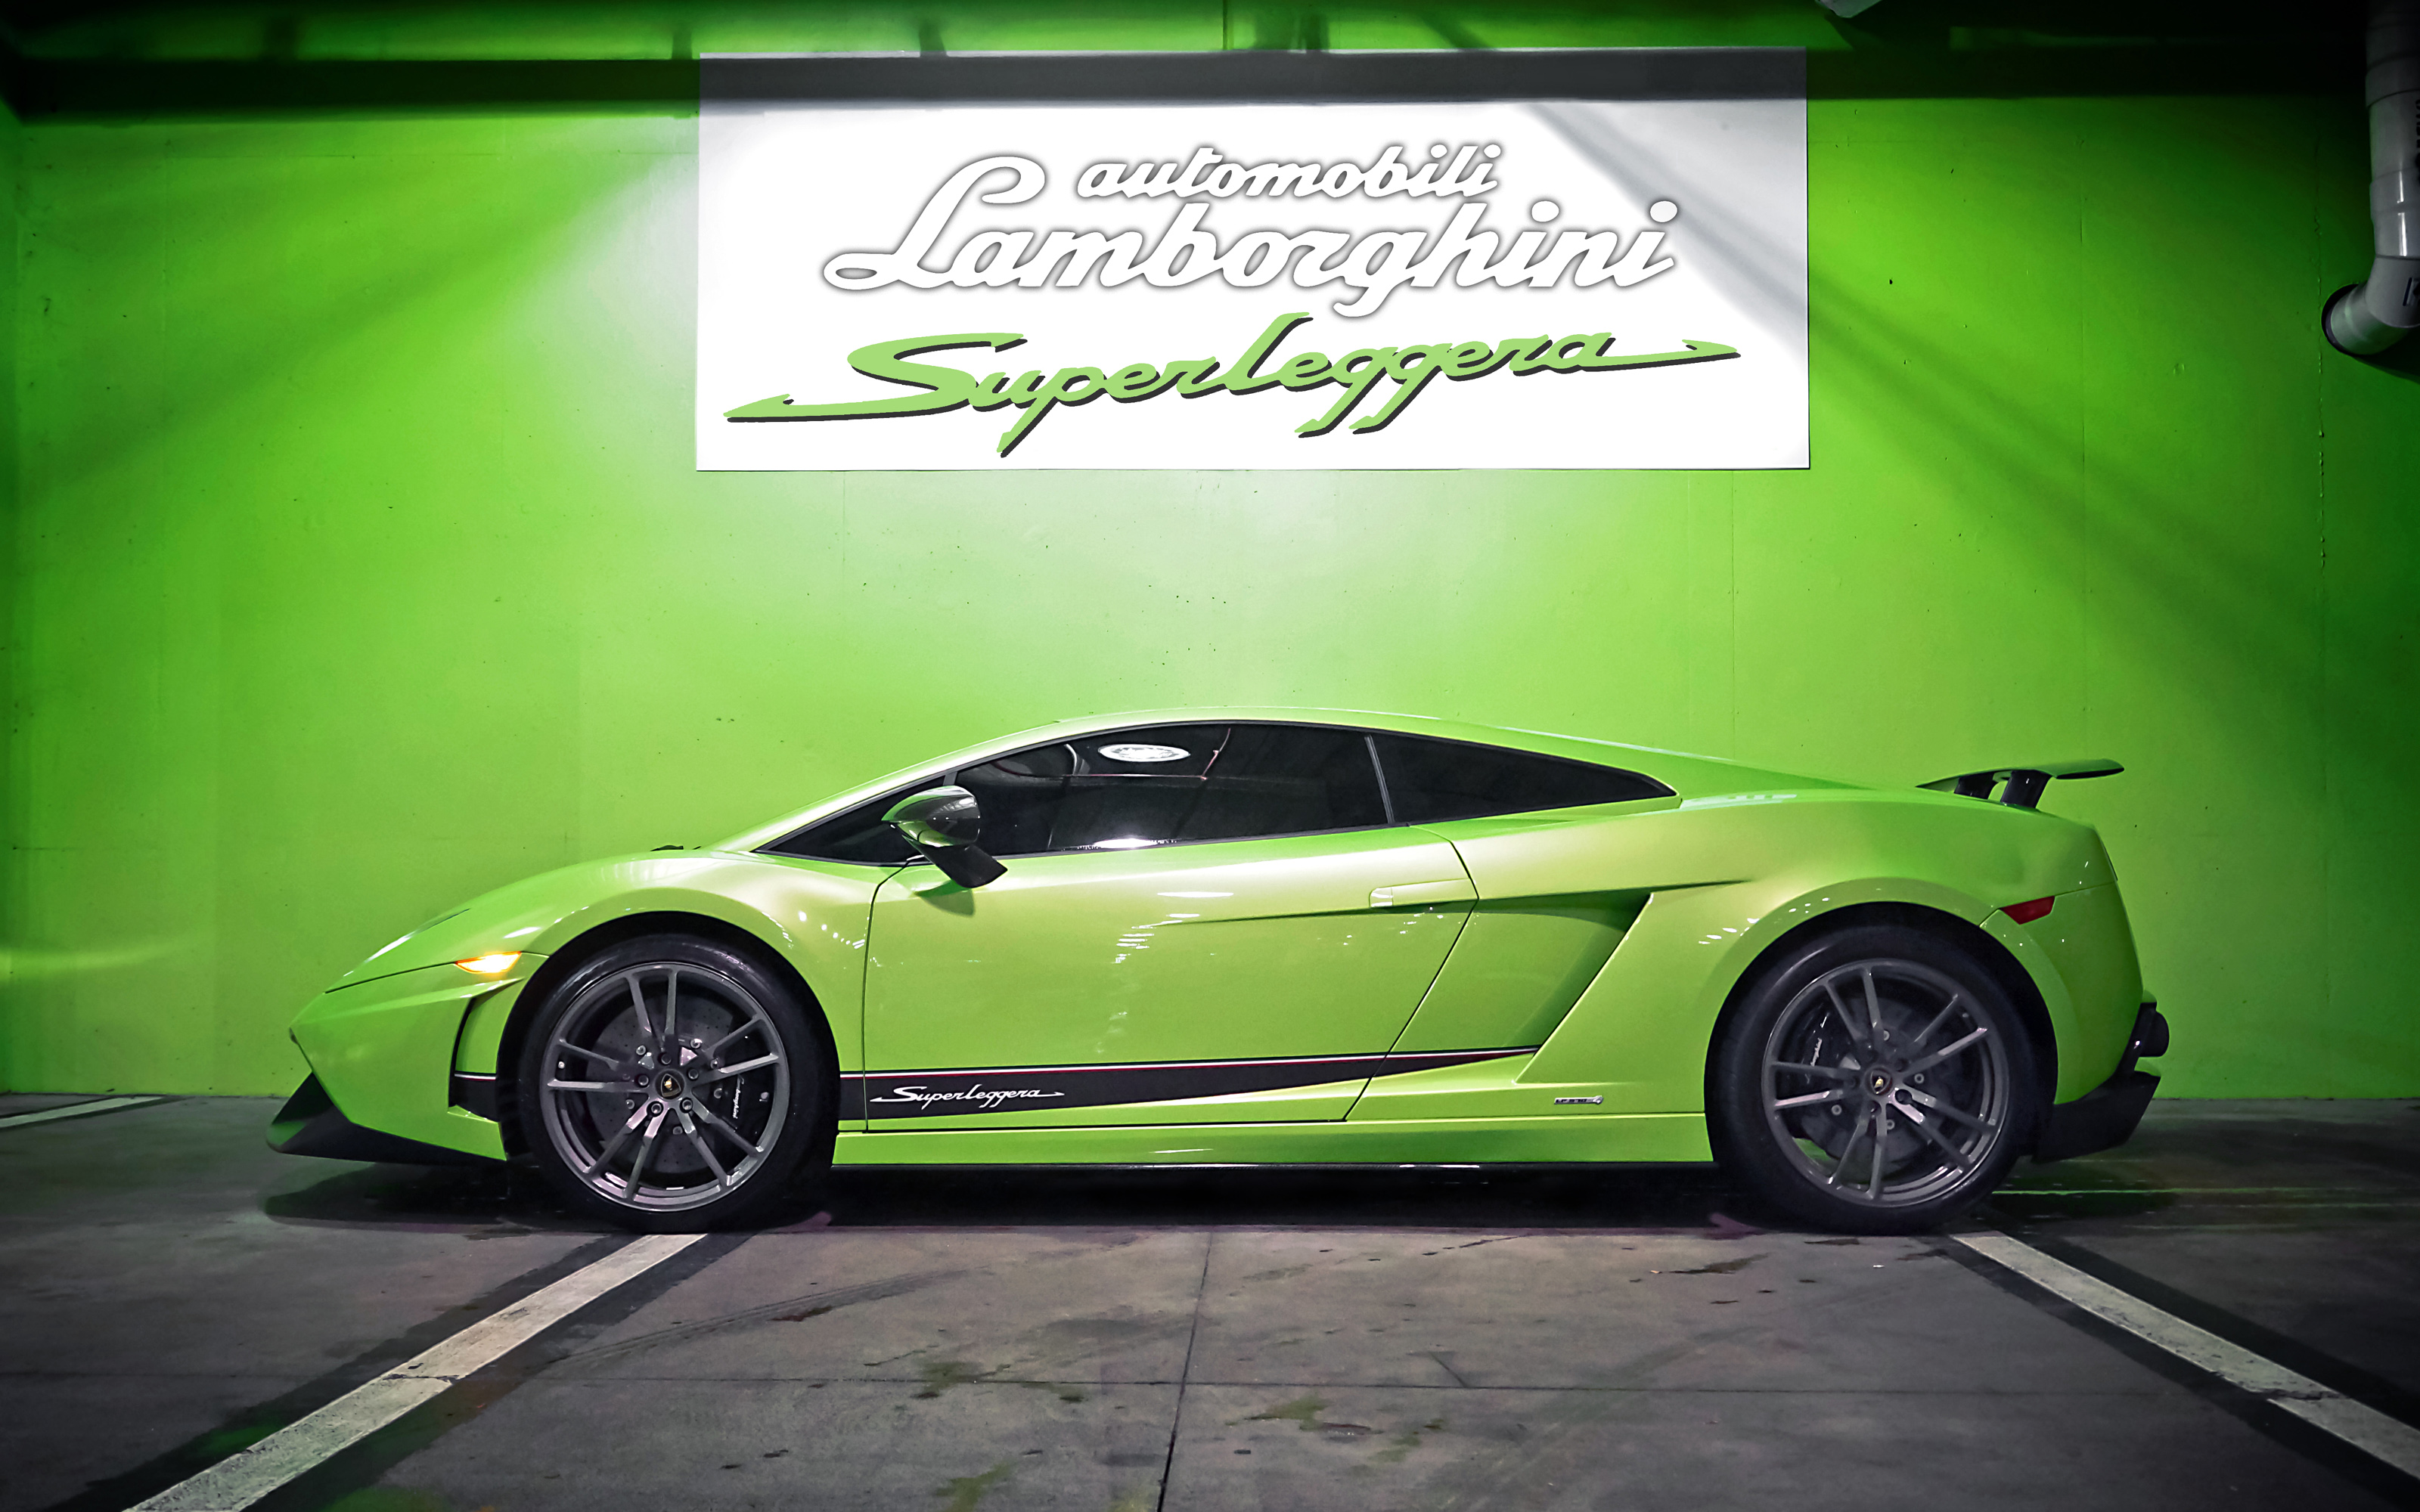 2010 Lamborghini Gallardo Superleggera Green - HD Wallpaper 